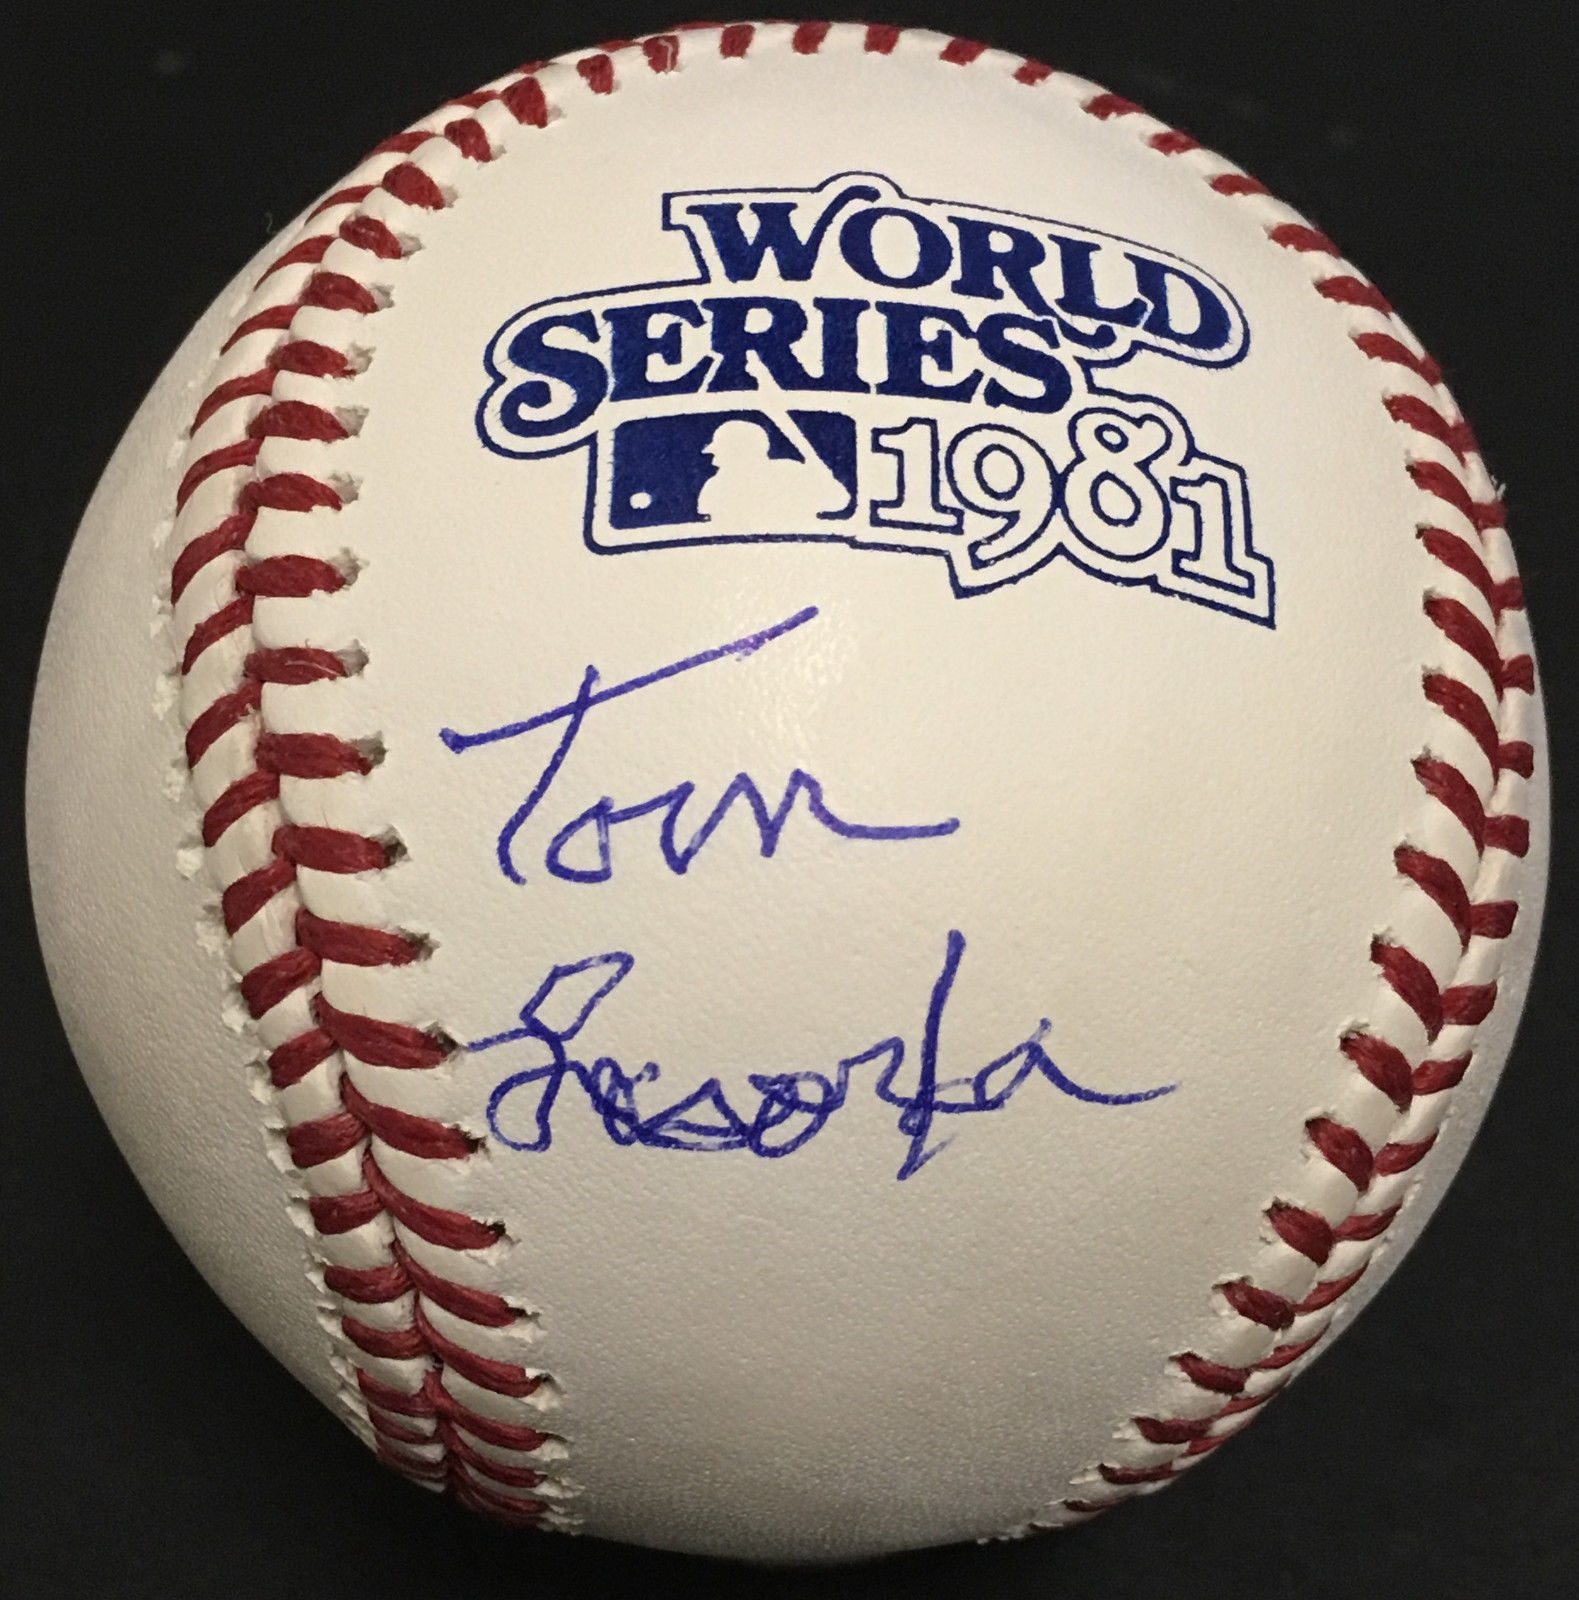 Tom Tommy Lasorda Dodgers HOF manager signed 1981 WS baseball autograph JSA COA